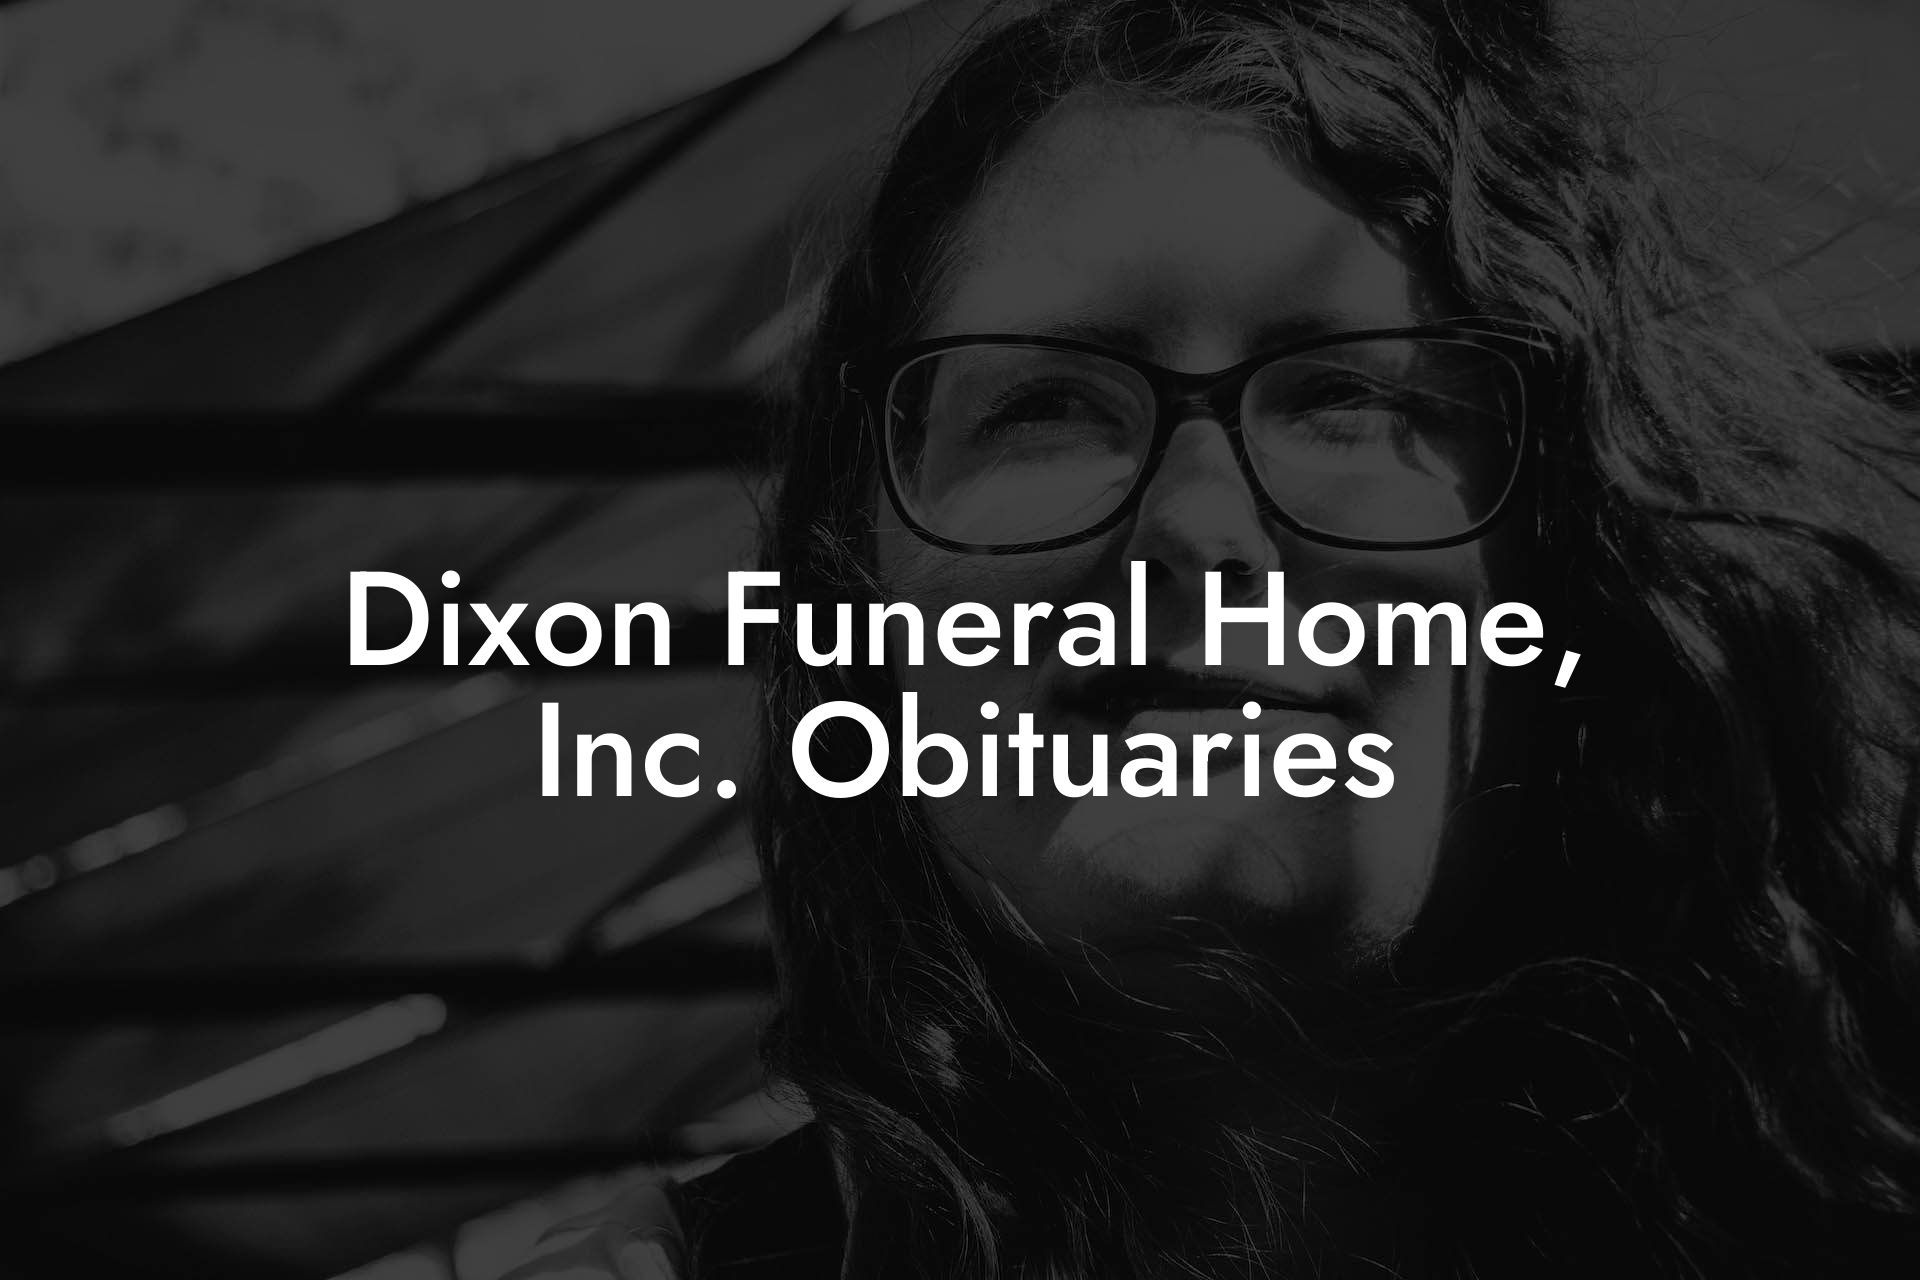 Dixon Funeral Home, Inc. Obituaries